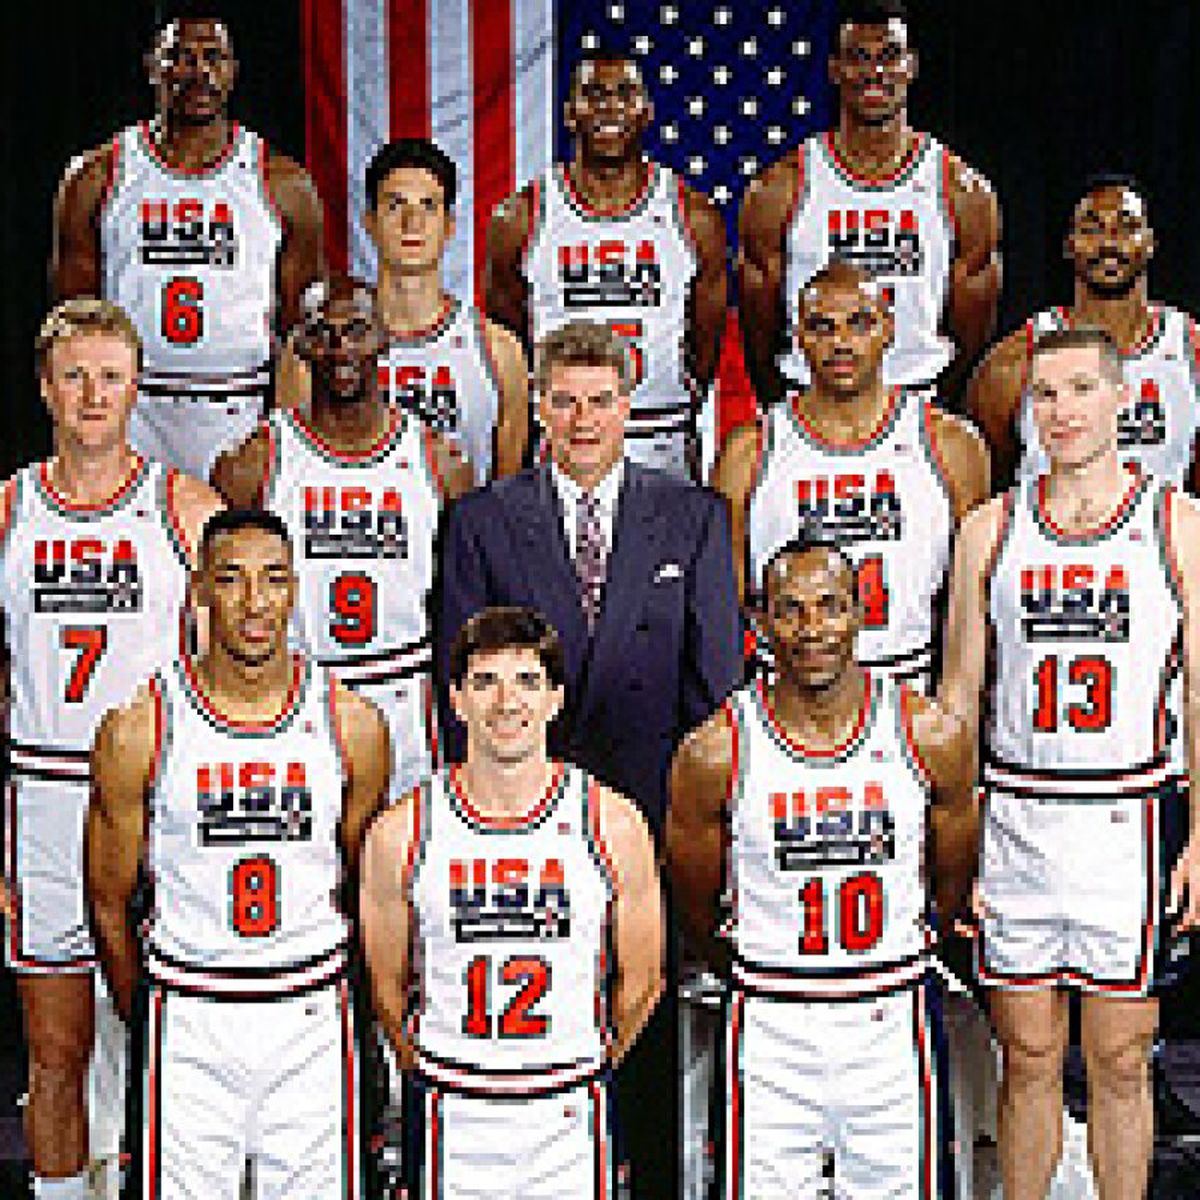 Veinte años del 'Dream Team', el mejor equipo de baloncesto nunca visto